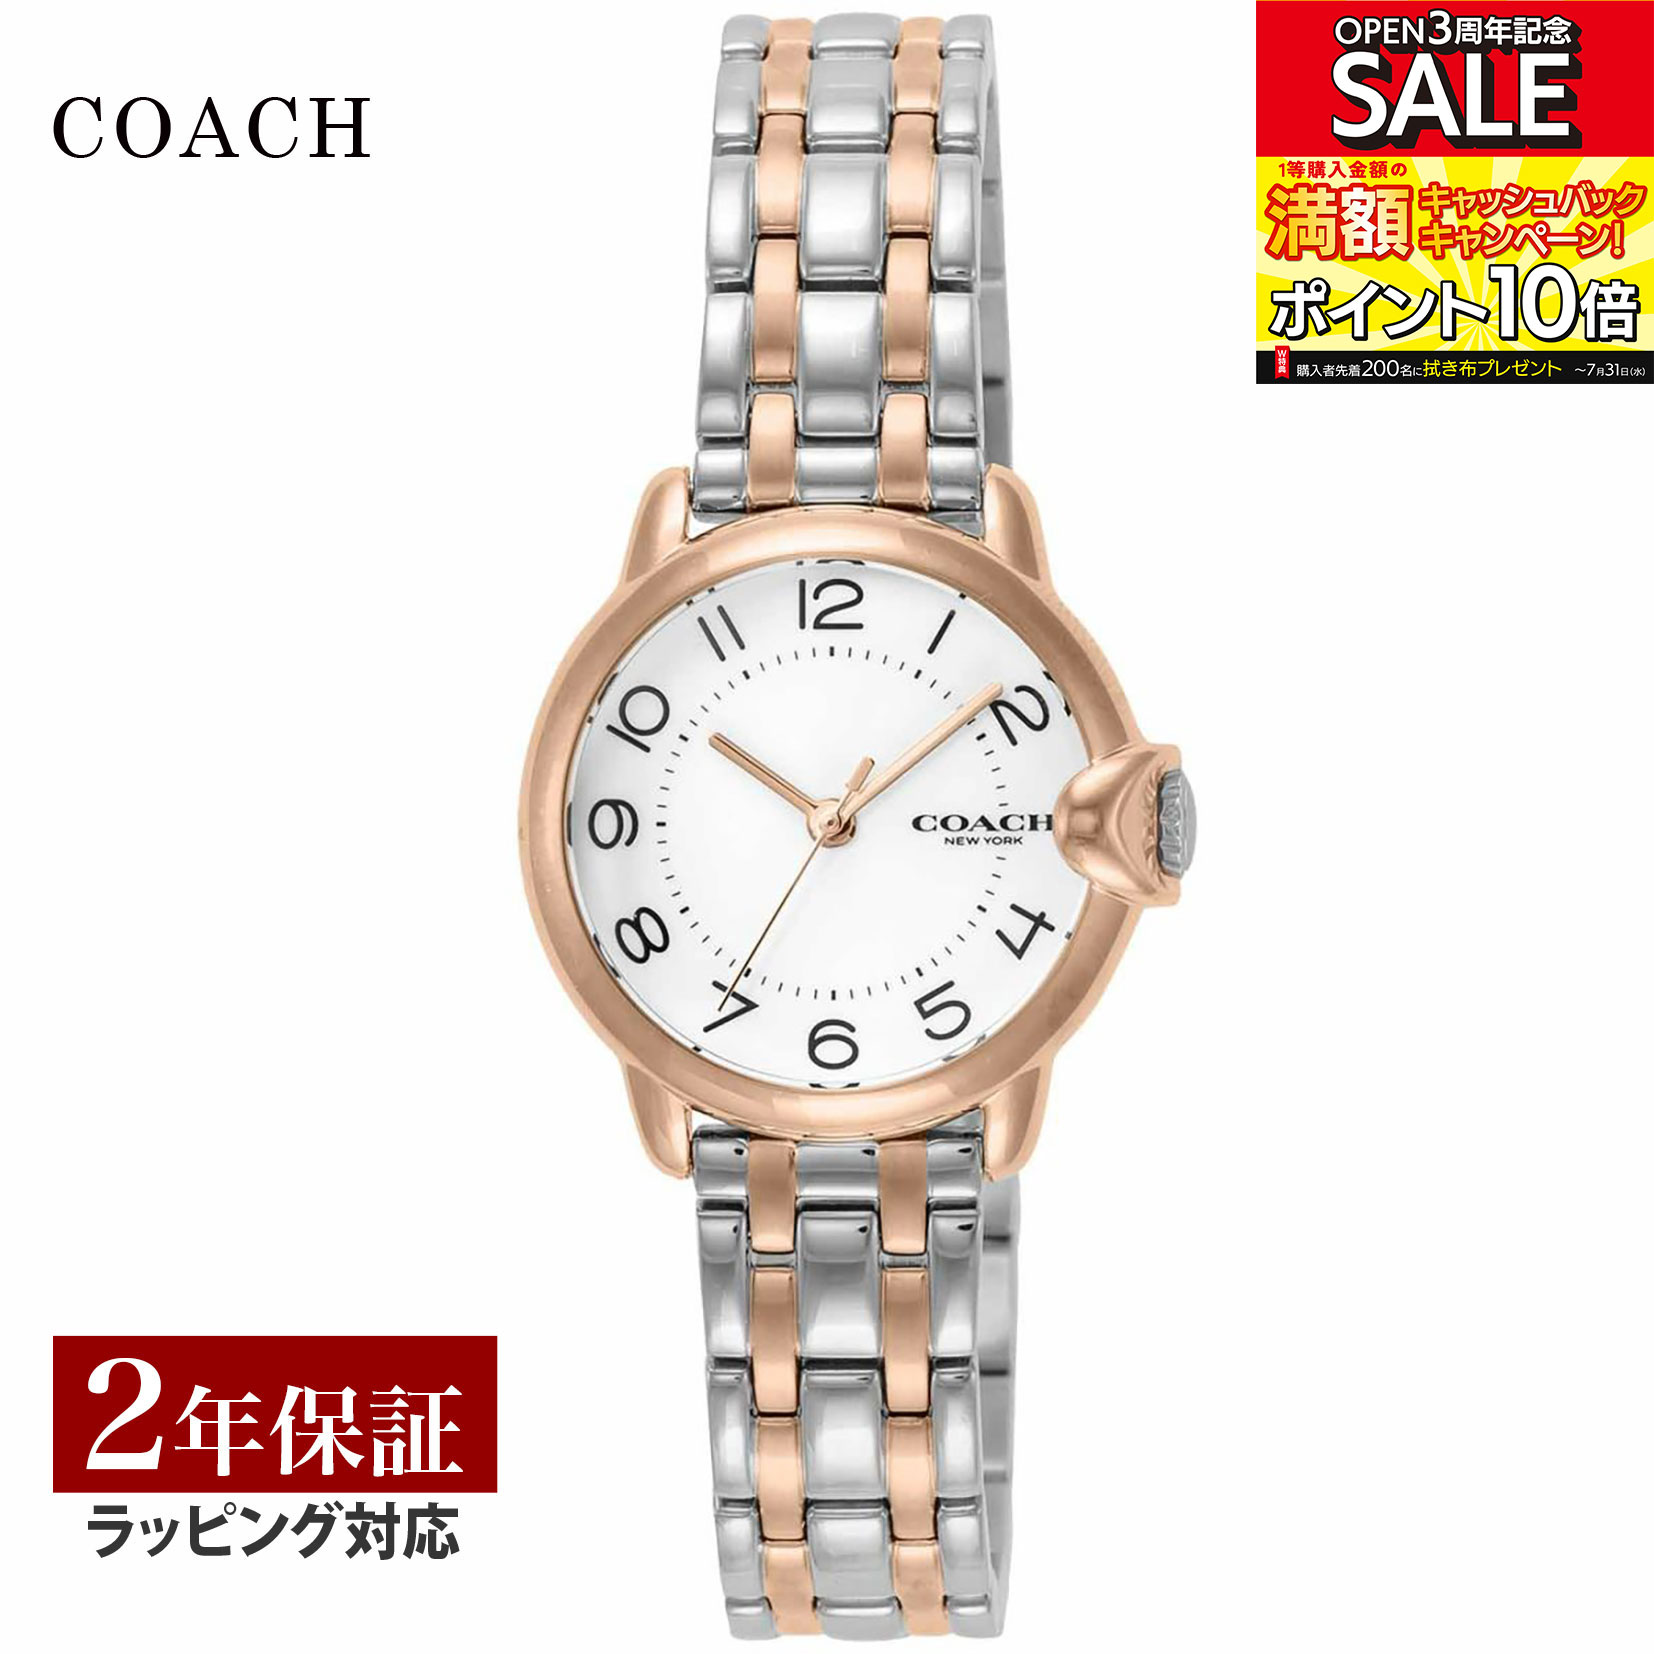 【数量限定 SALE】 コーチ COACH レディース 時計 ARDEN アーデン クォーツ ホワイト 14503604 時計 腕時計 高級腕時計 ブランド